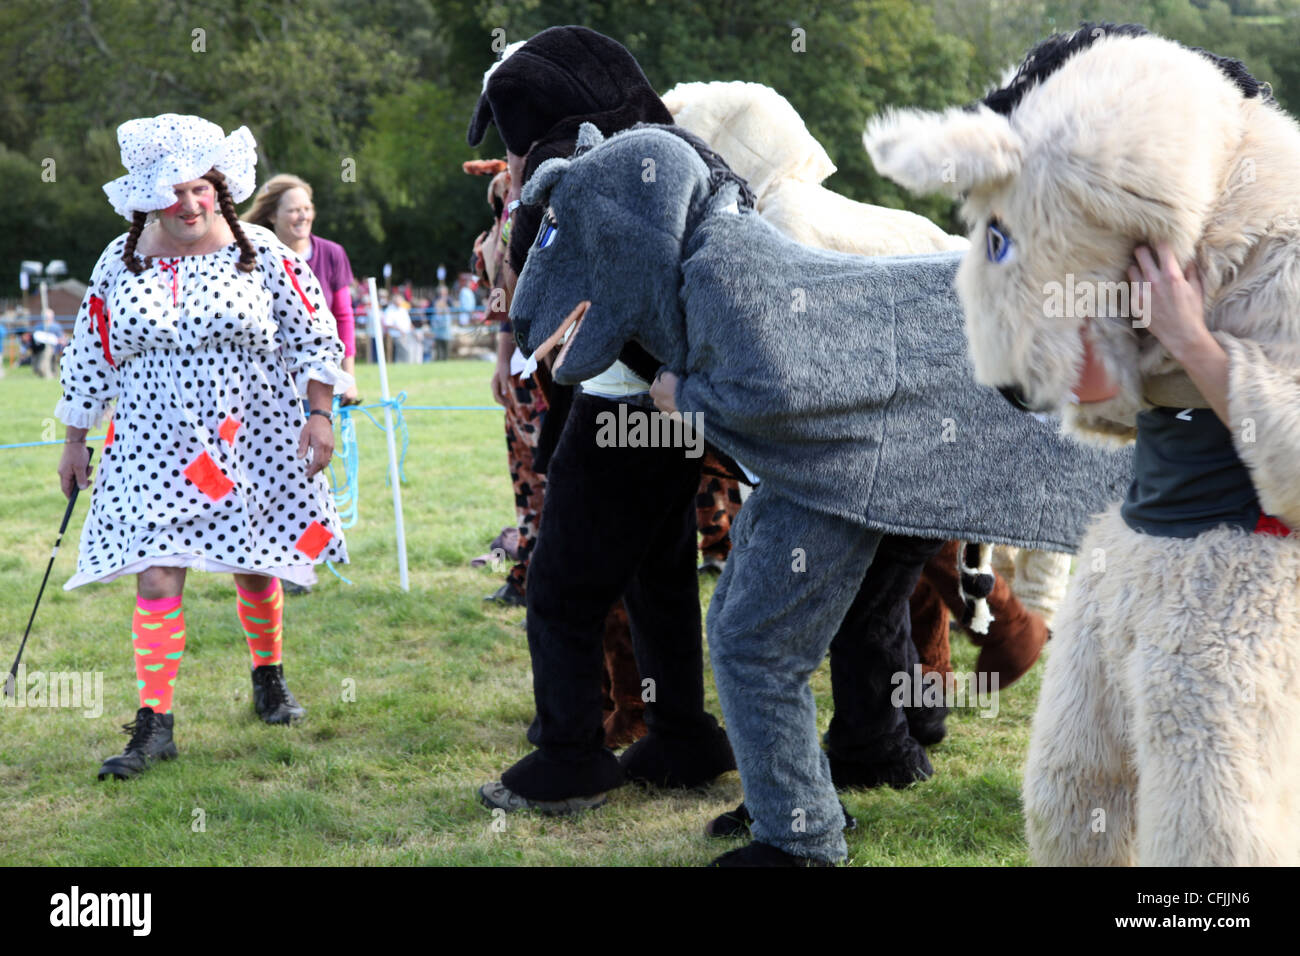 Pantomime course de chevaux avec Dame comme démarreur, Widecombe Fair, Dartmoor, dans le Devon, Angleterre, Royaume-Uni, Europe Banque D'Images